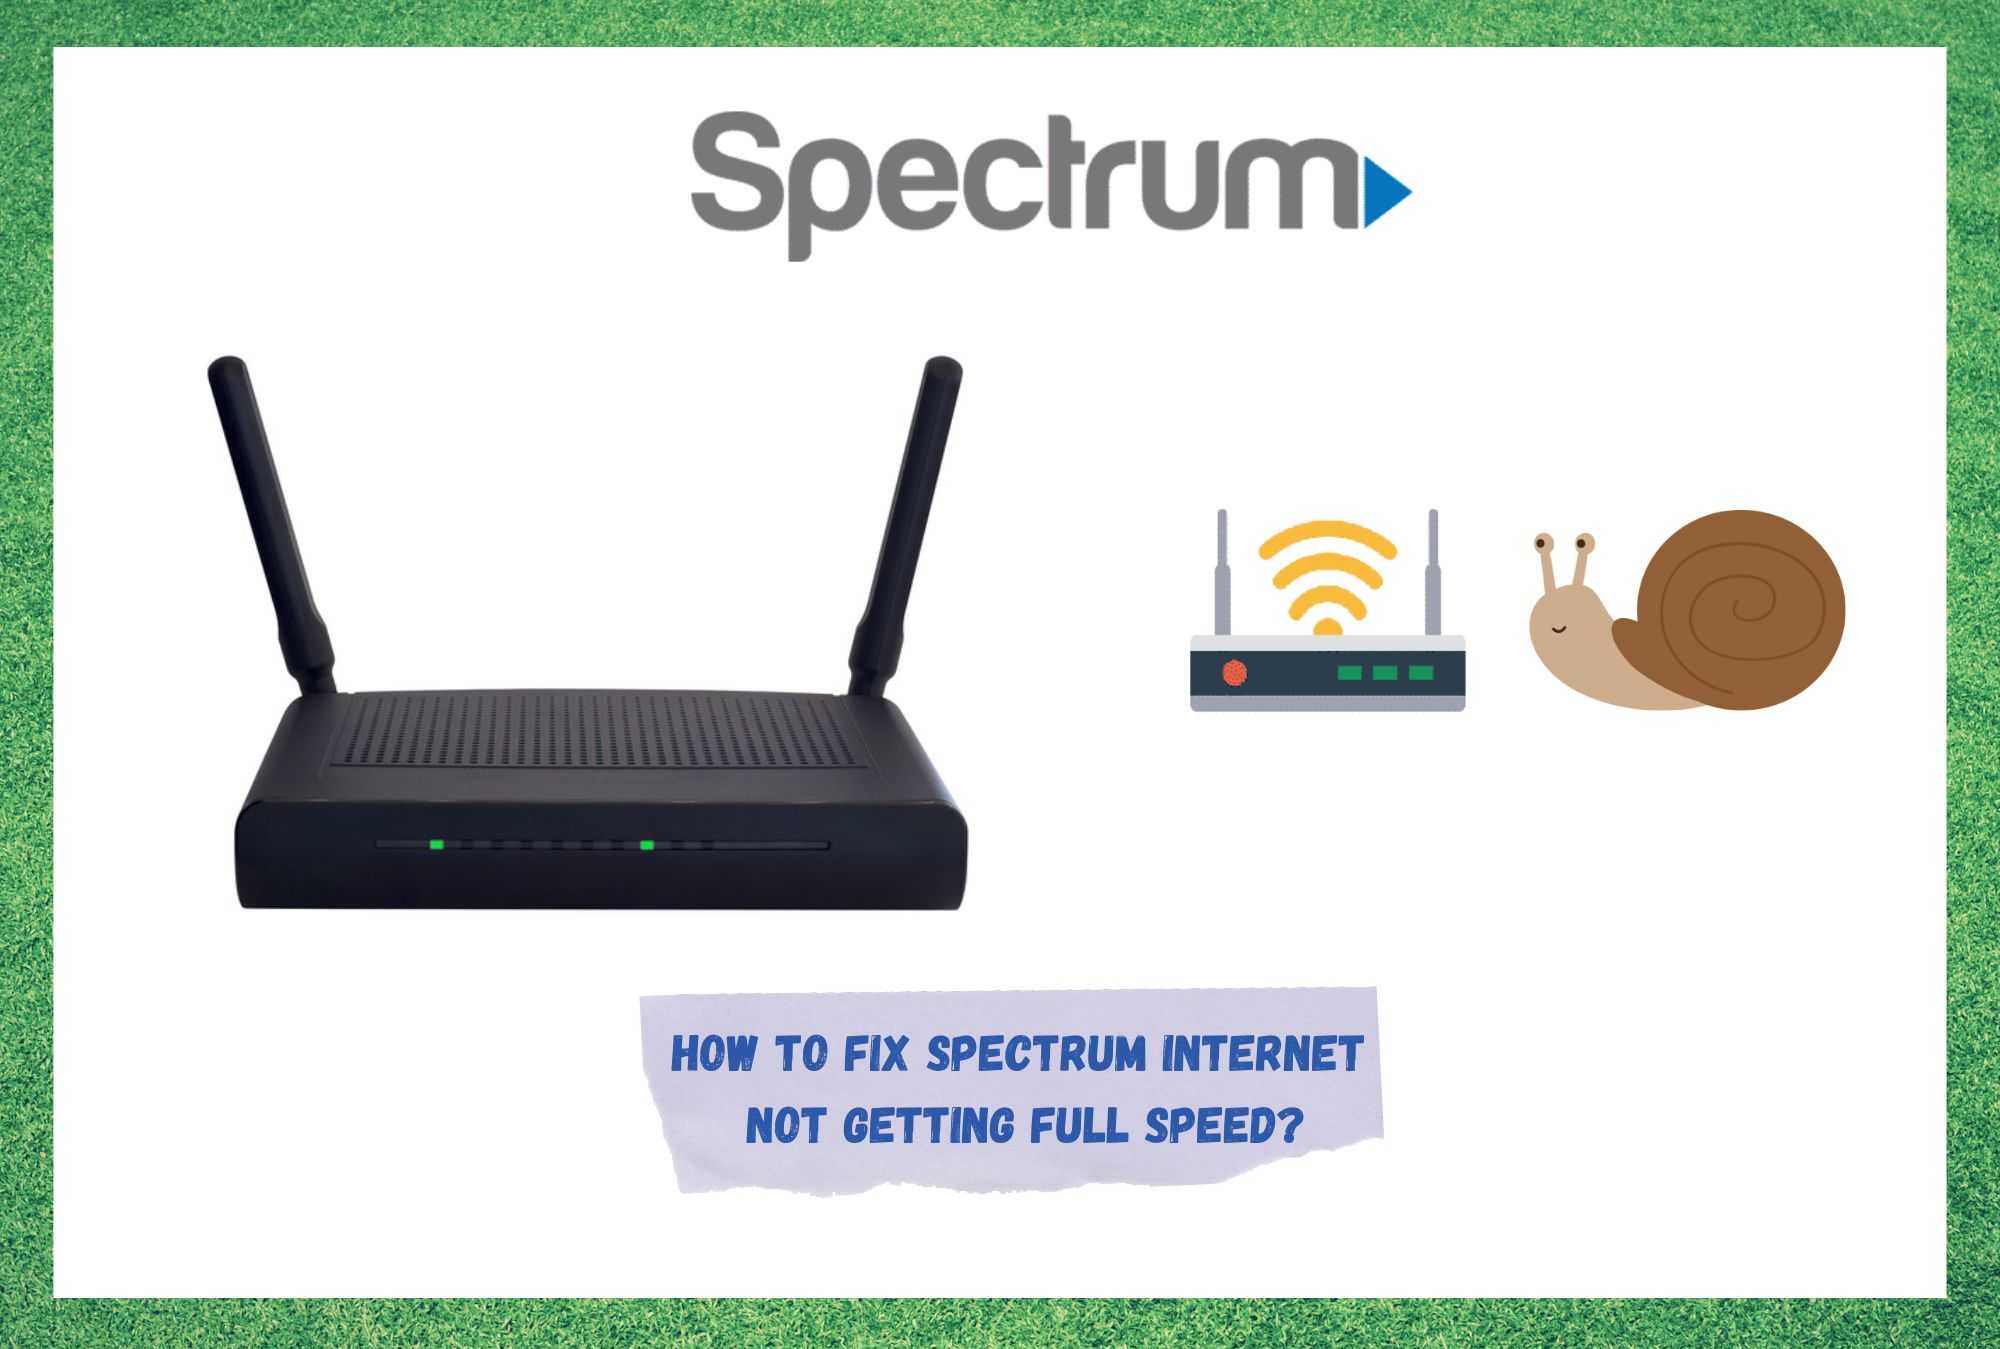 7 τρόποι για να διορθώσετε το Spectrum Internet που δεν έχει πλήρη ταχύτητα